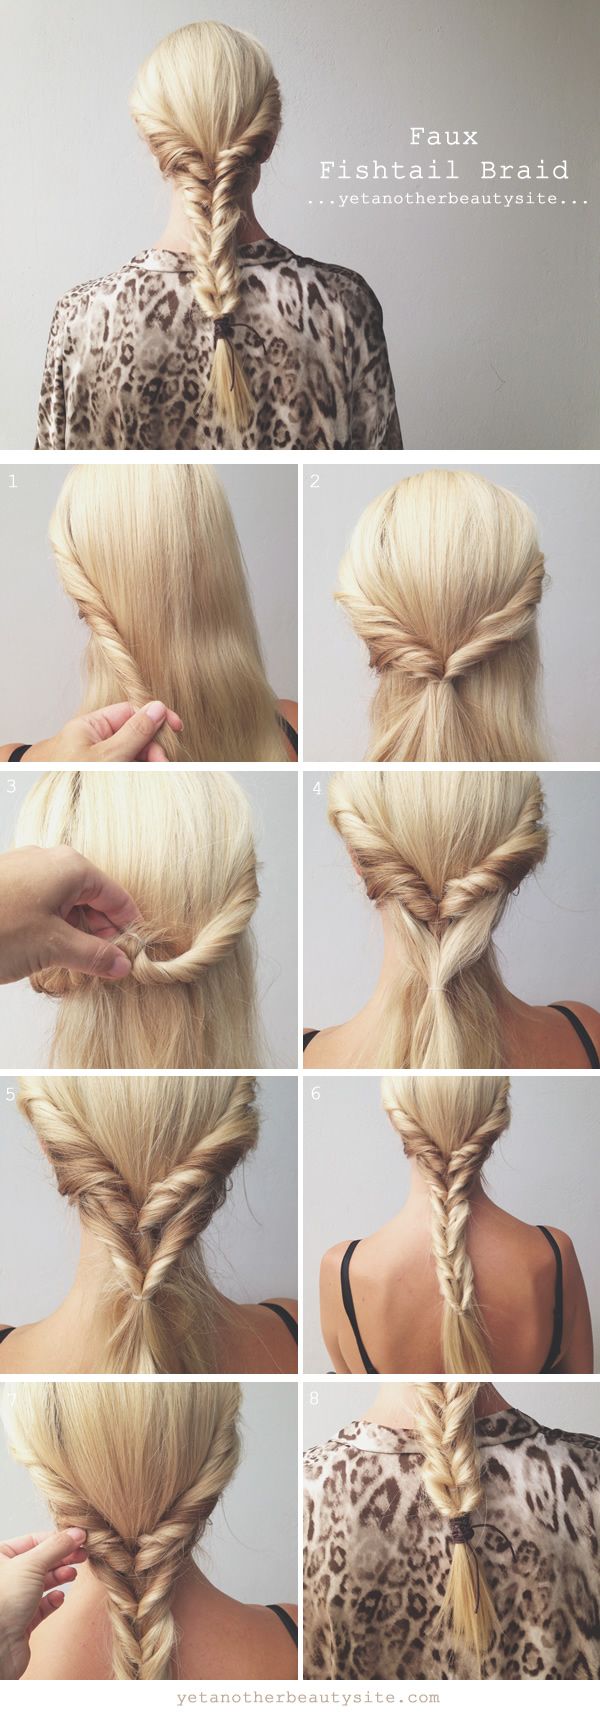 5 tutorial per acconciature con capelli lunghi